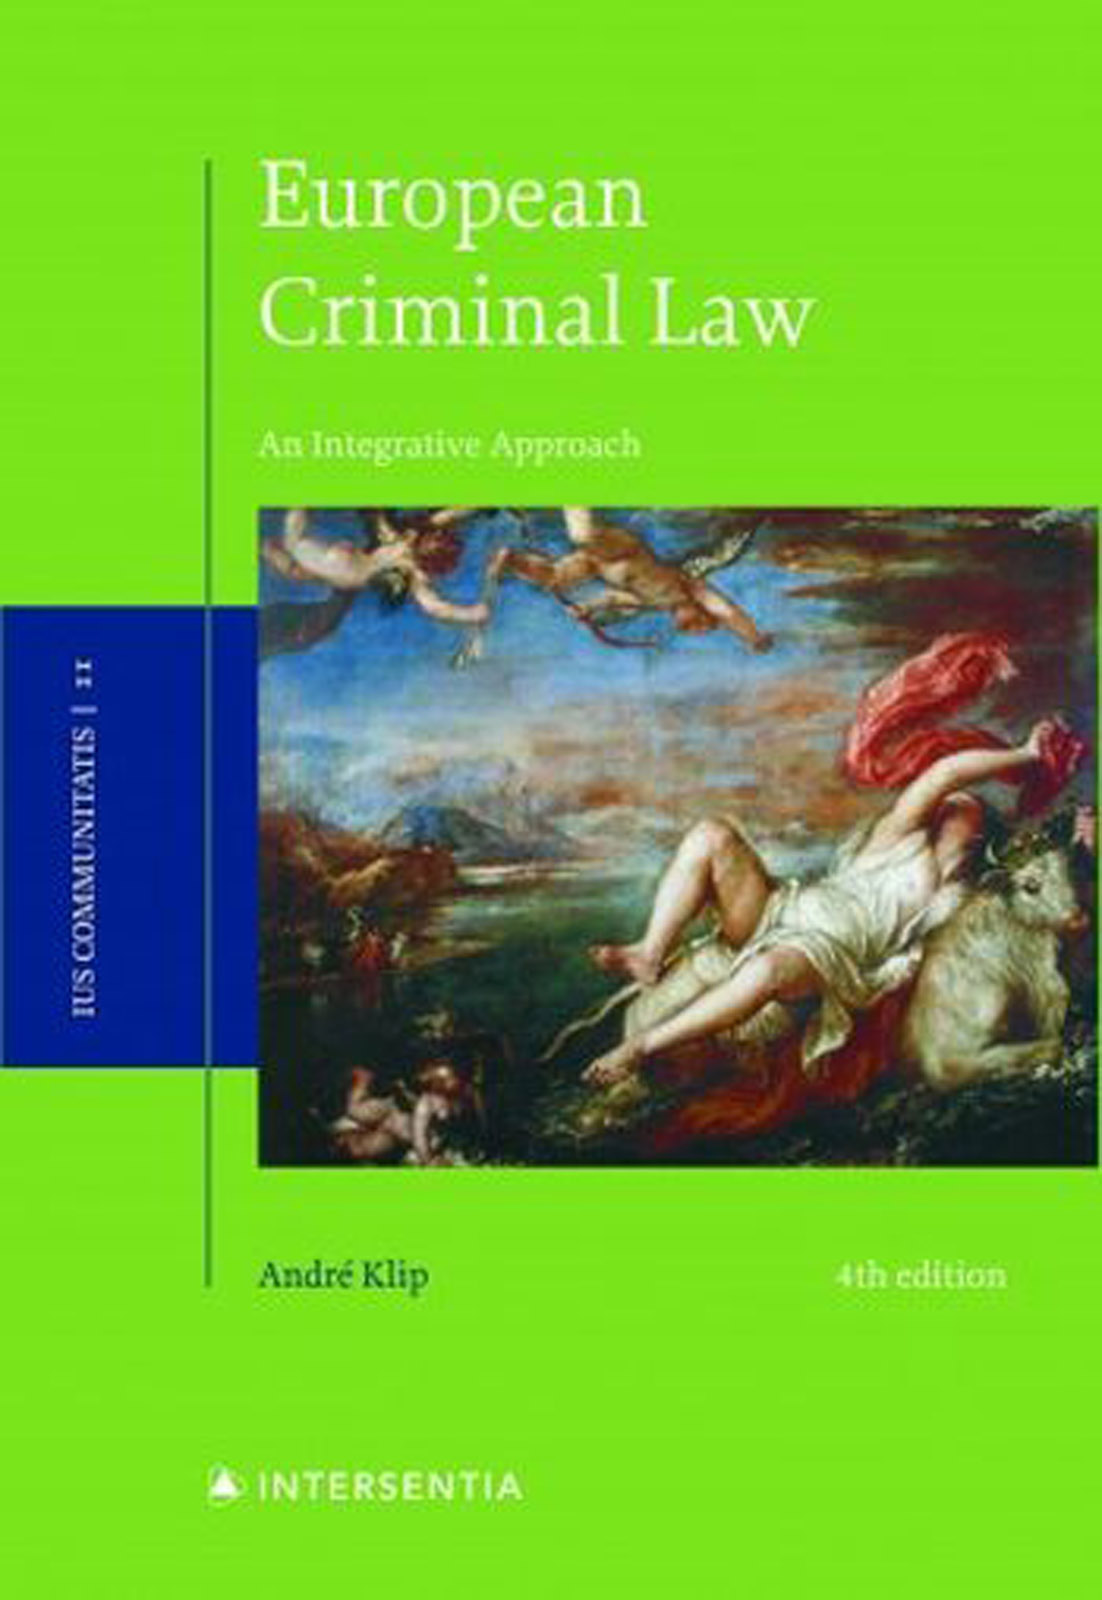 Cover, European Criminal Law by André Klip